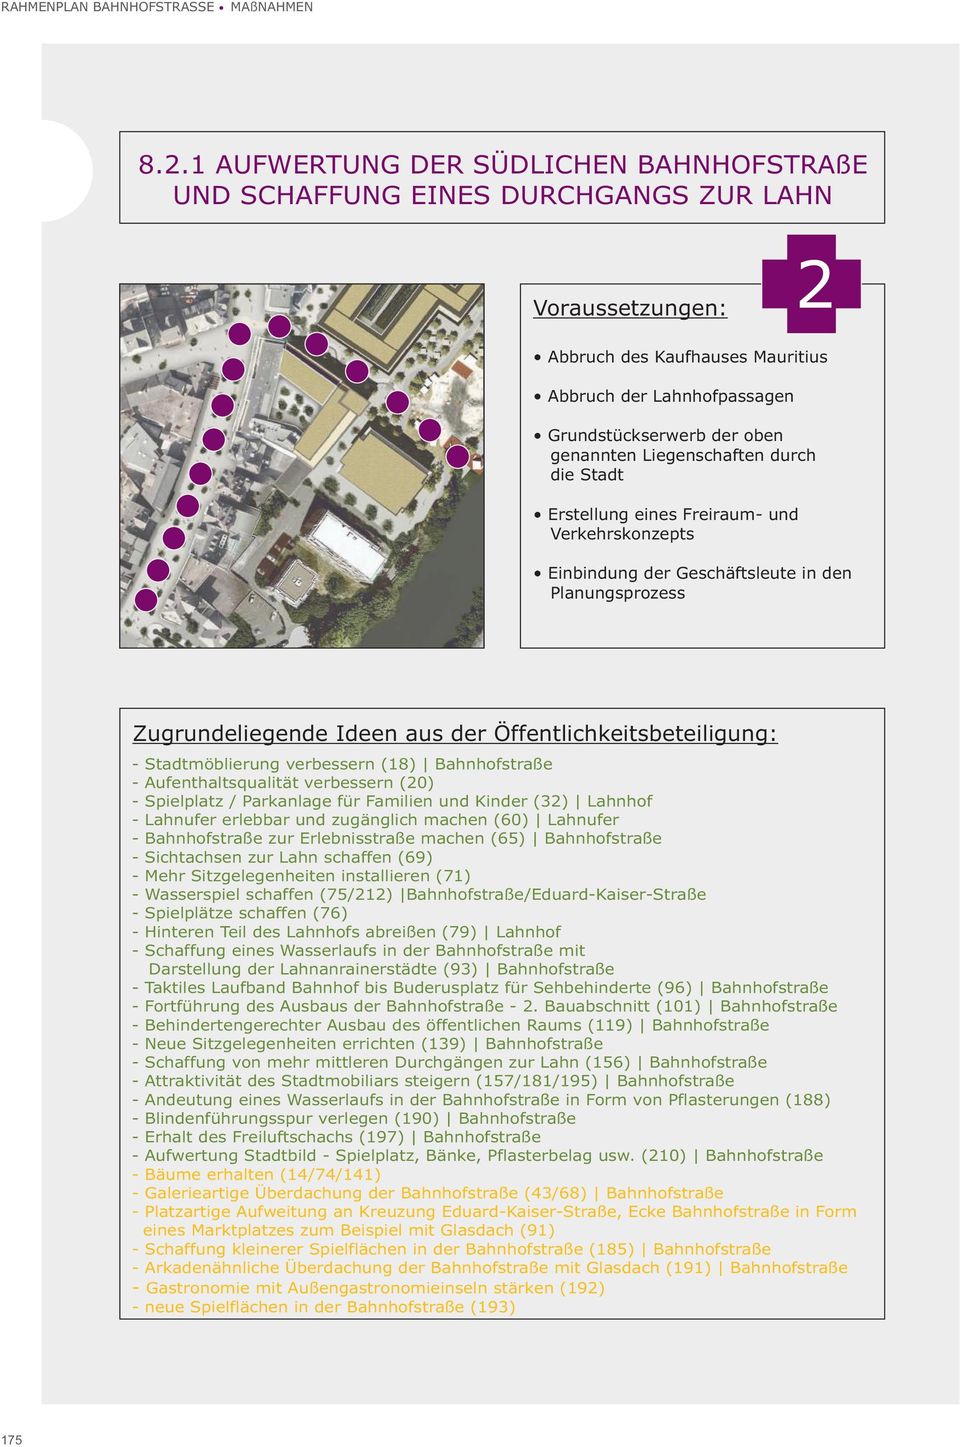 (20) - Spielplatz / Parkanlage für Familien und Kinder (32) Lahnhof - Lahnufer erlebbar und zugänglich machen (60) Lahnufer - Bahnhofstraße zur Erlebnisstraße machen (65) Bahnhofstraße - Sichtachsen